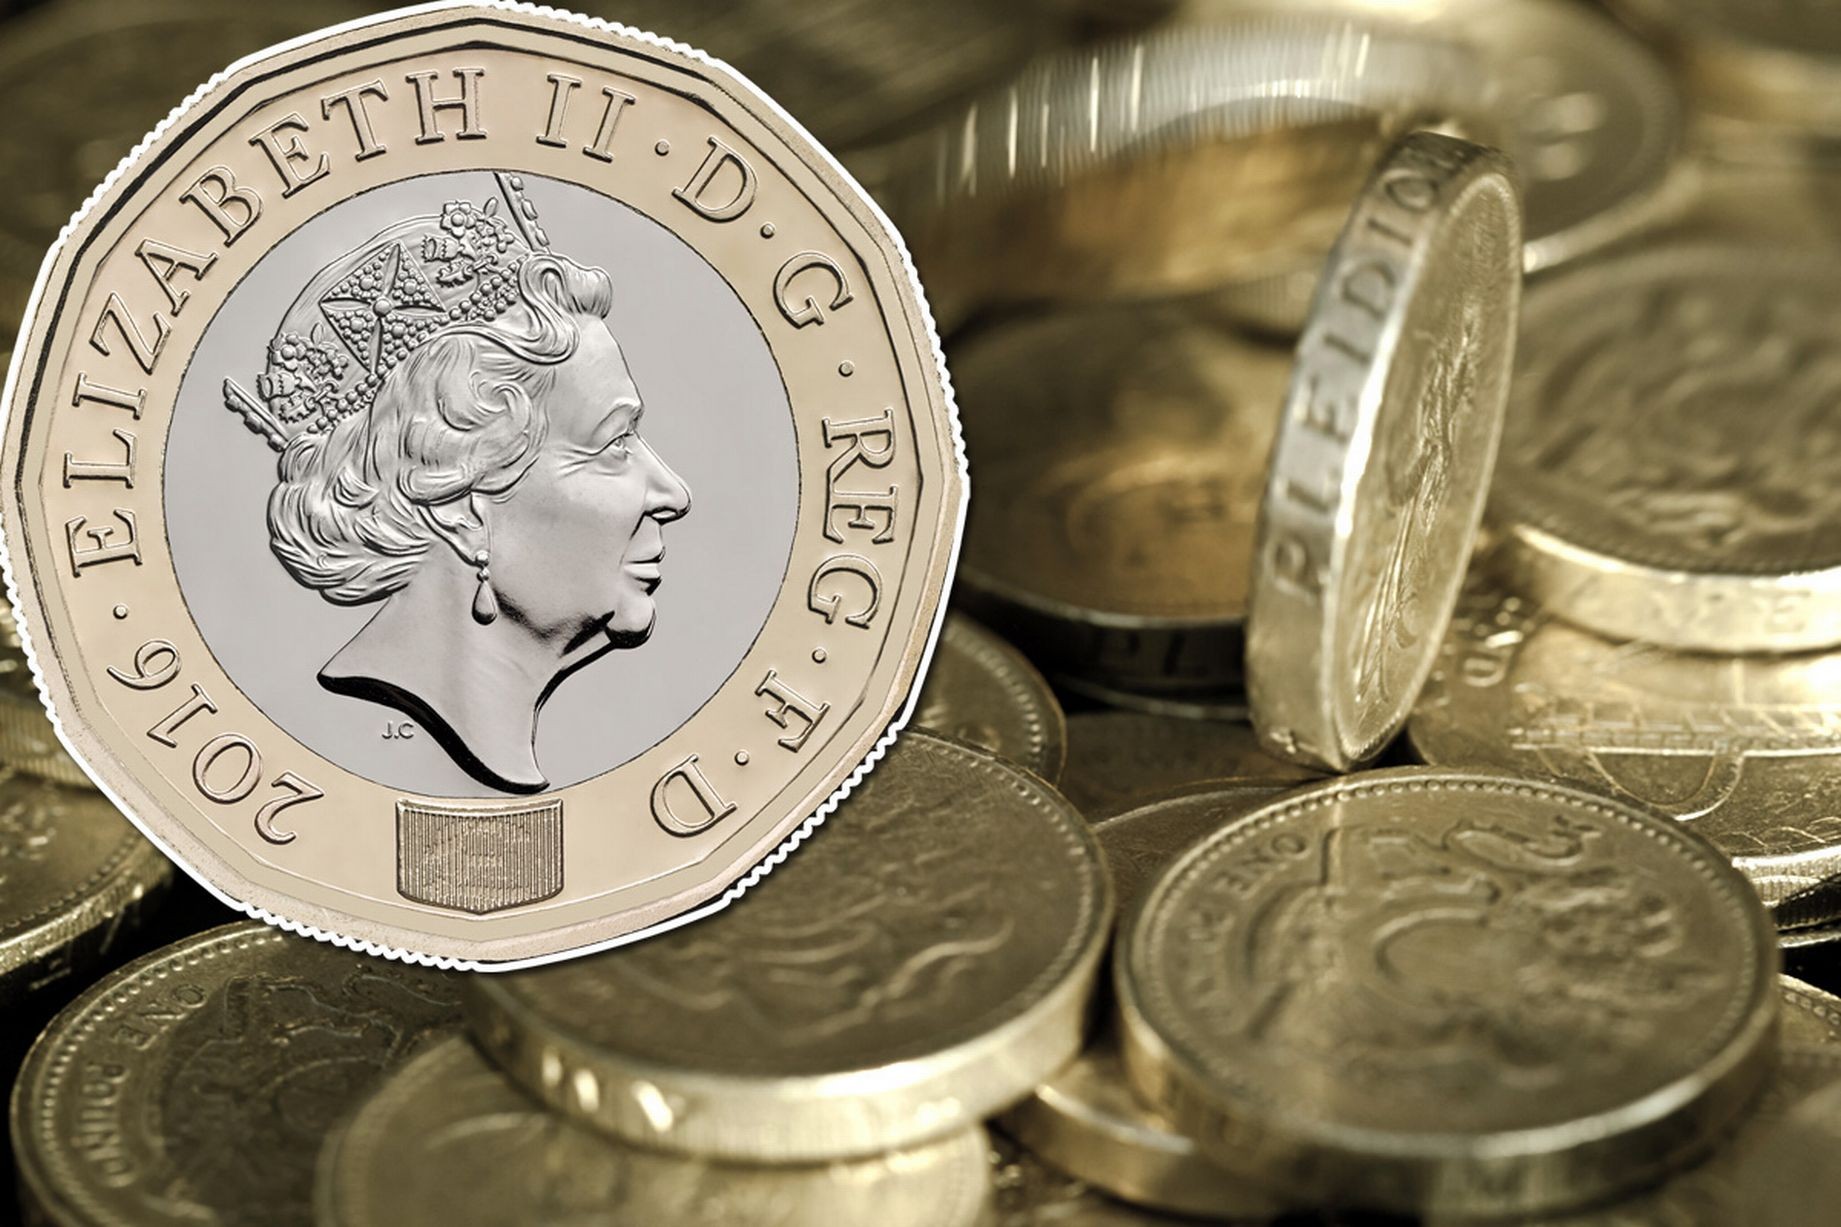 Britania përgatitet të nxjerrë nga qarkullimi monedhat e vjetra metalike